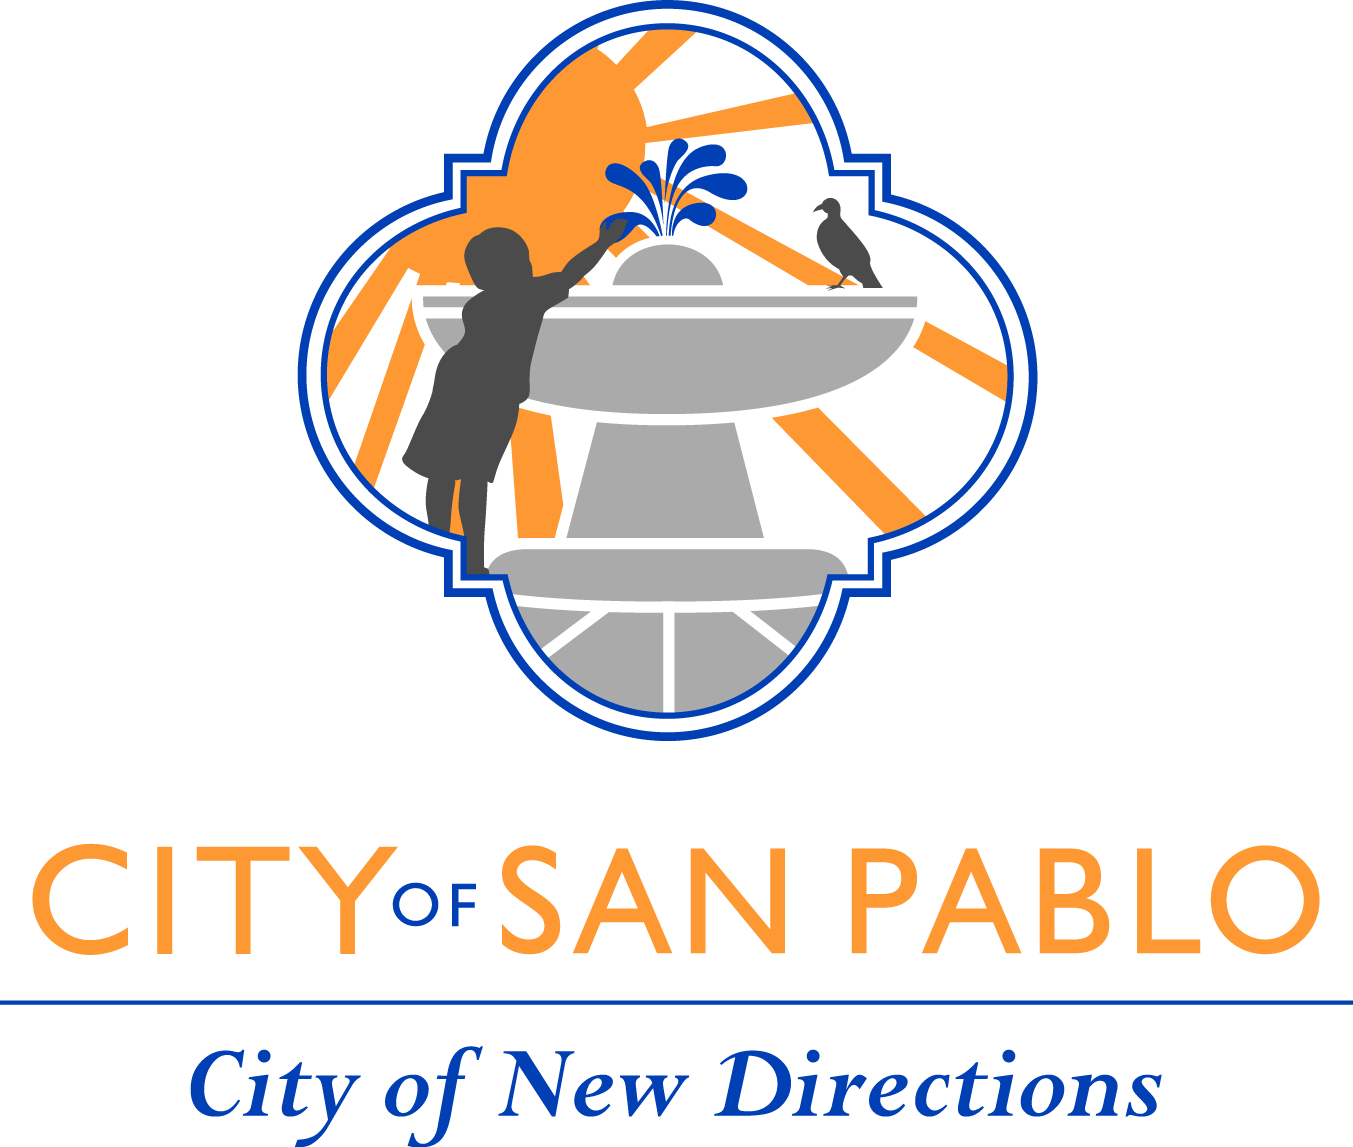 Logotipo de la ciudad de San Pablo, dice Ciudad de San Pablo, Ciudad de Nueva Dirección, muestra ilustración de niño, pájaro, sol, fuente de agua